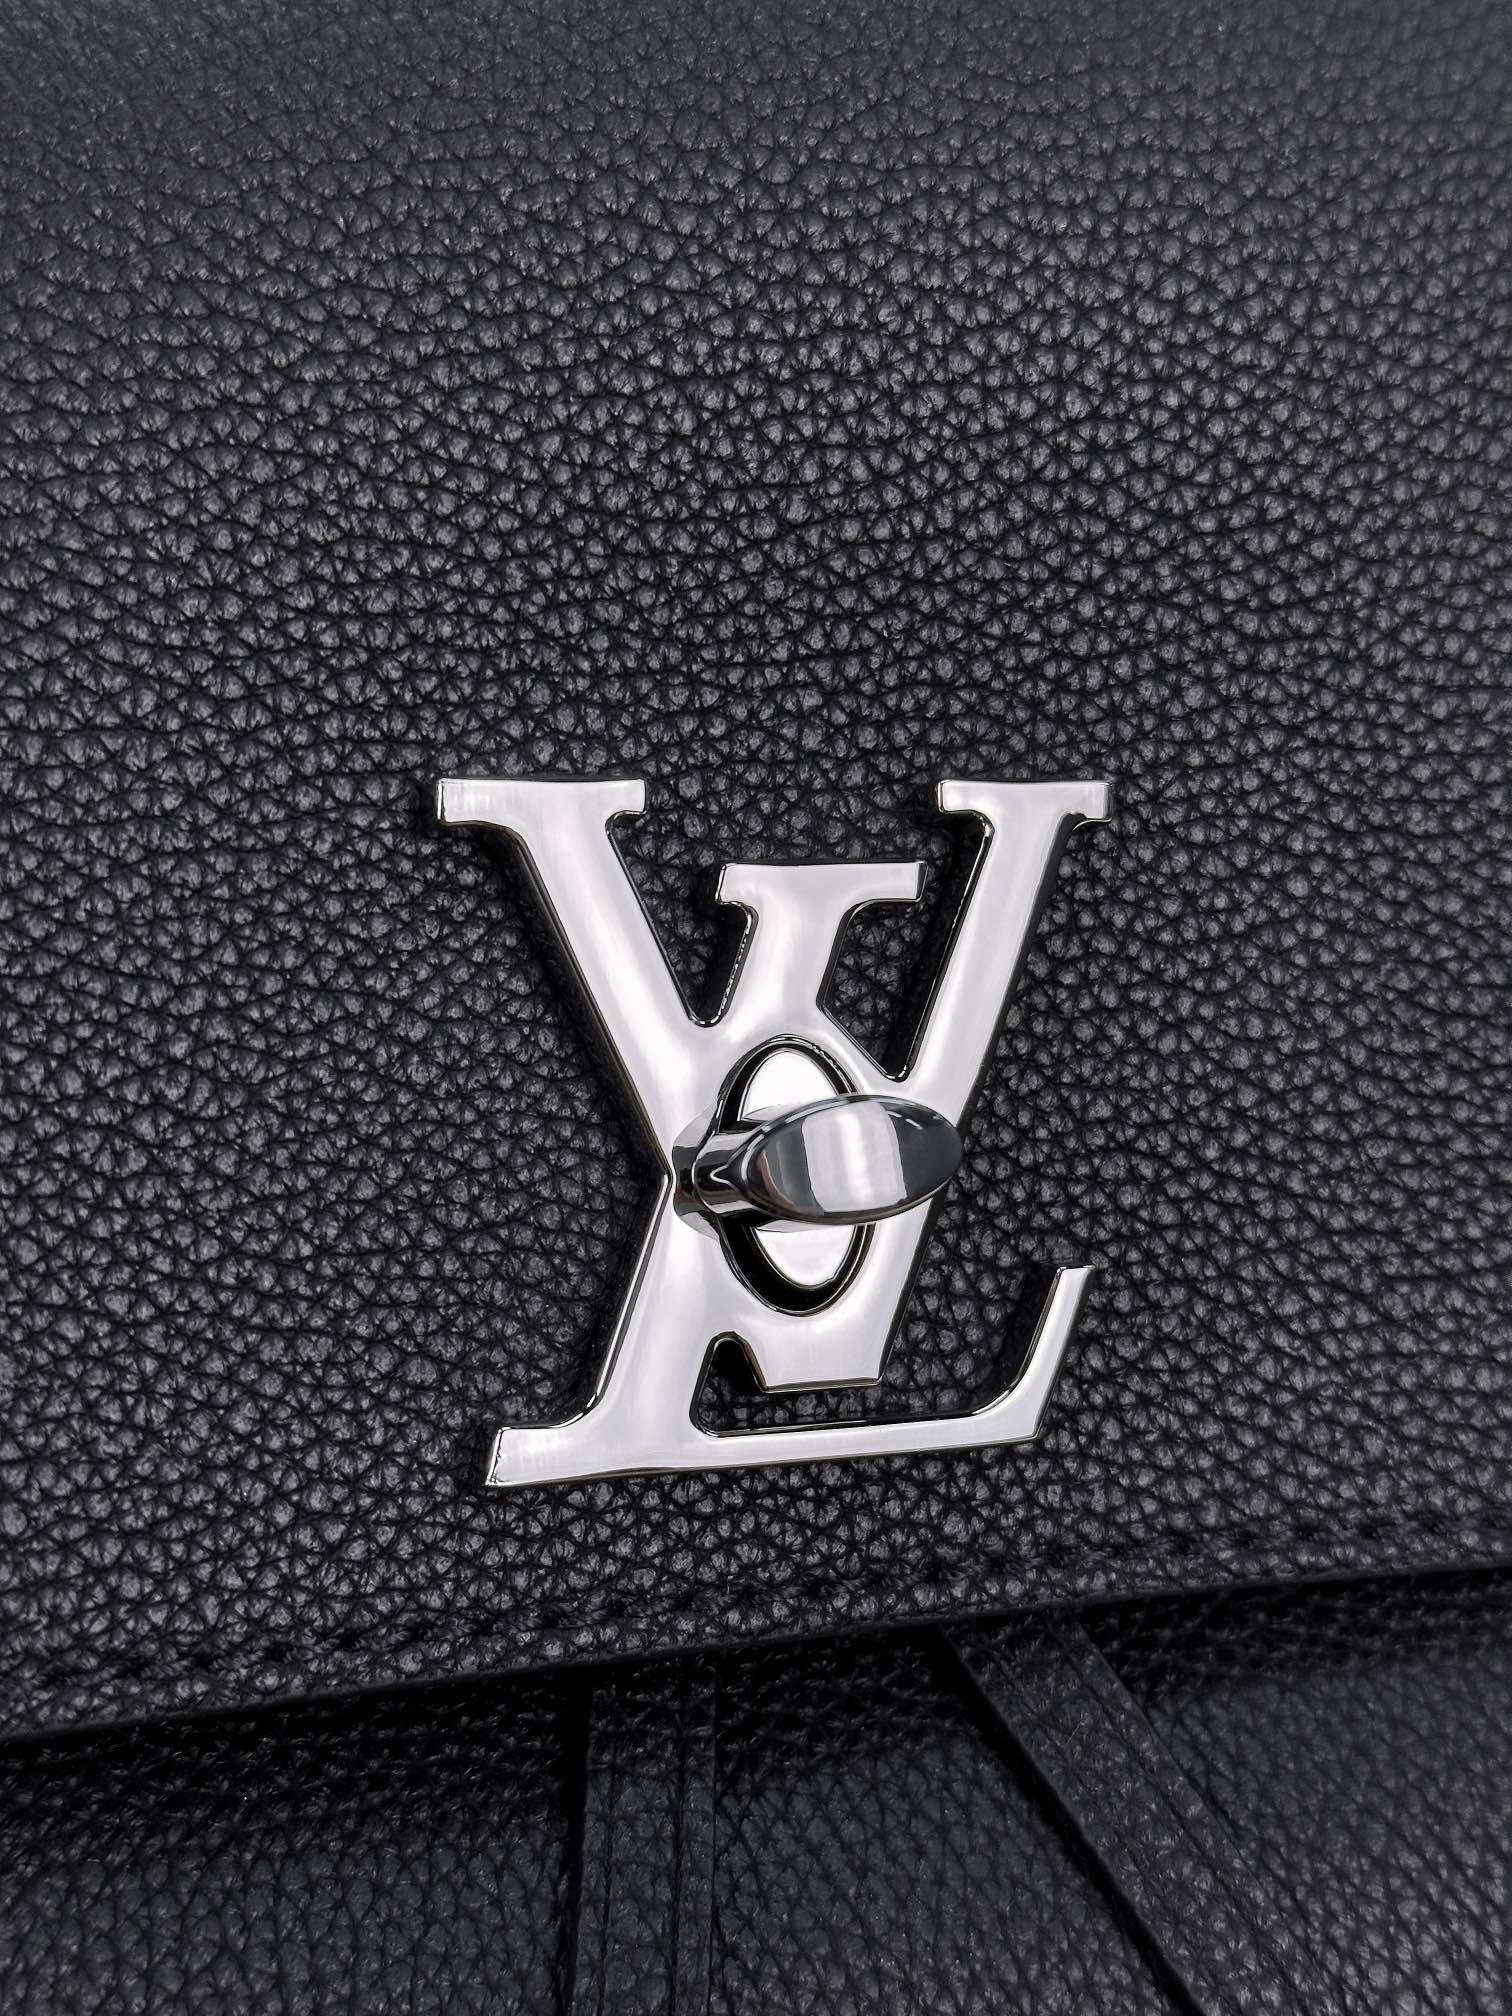 顶级原单M41815黑色LOCKME双肩包柔软的皮革材质标志性的LV扭锁设计此款Lockme背包以崭新的